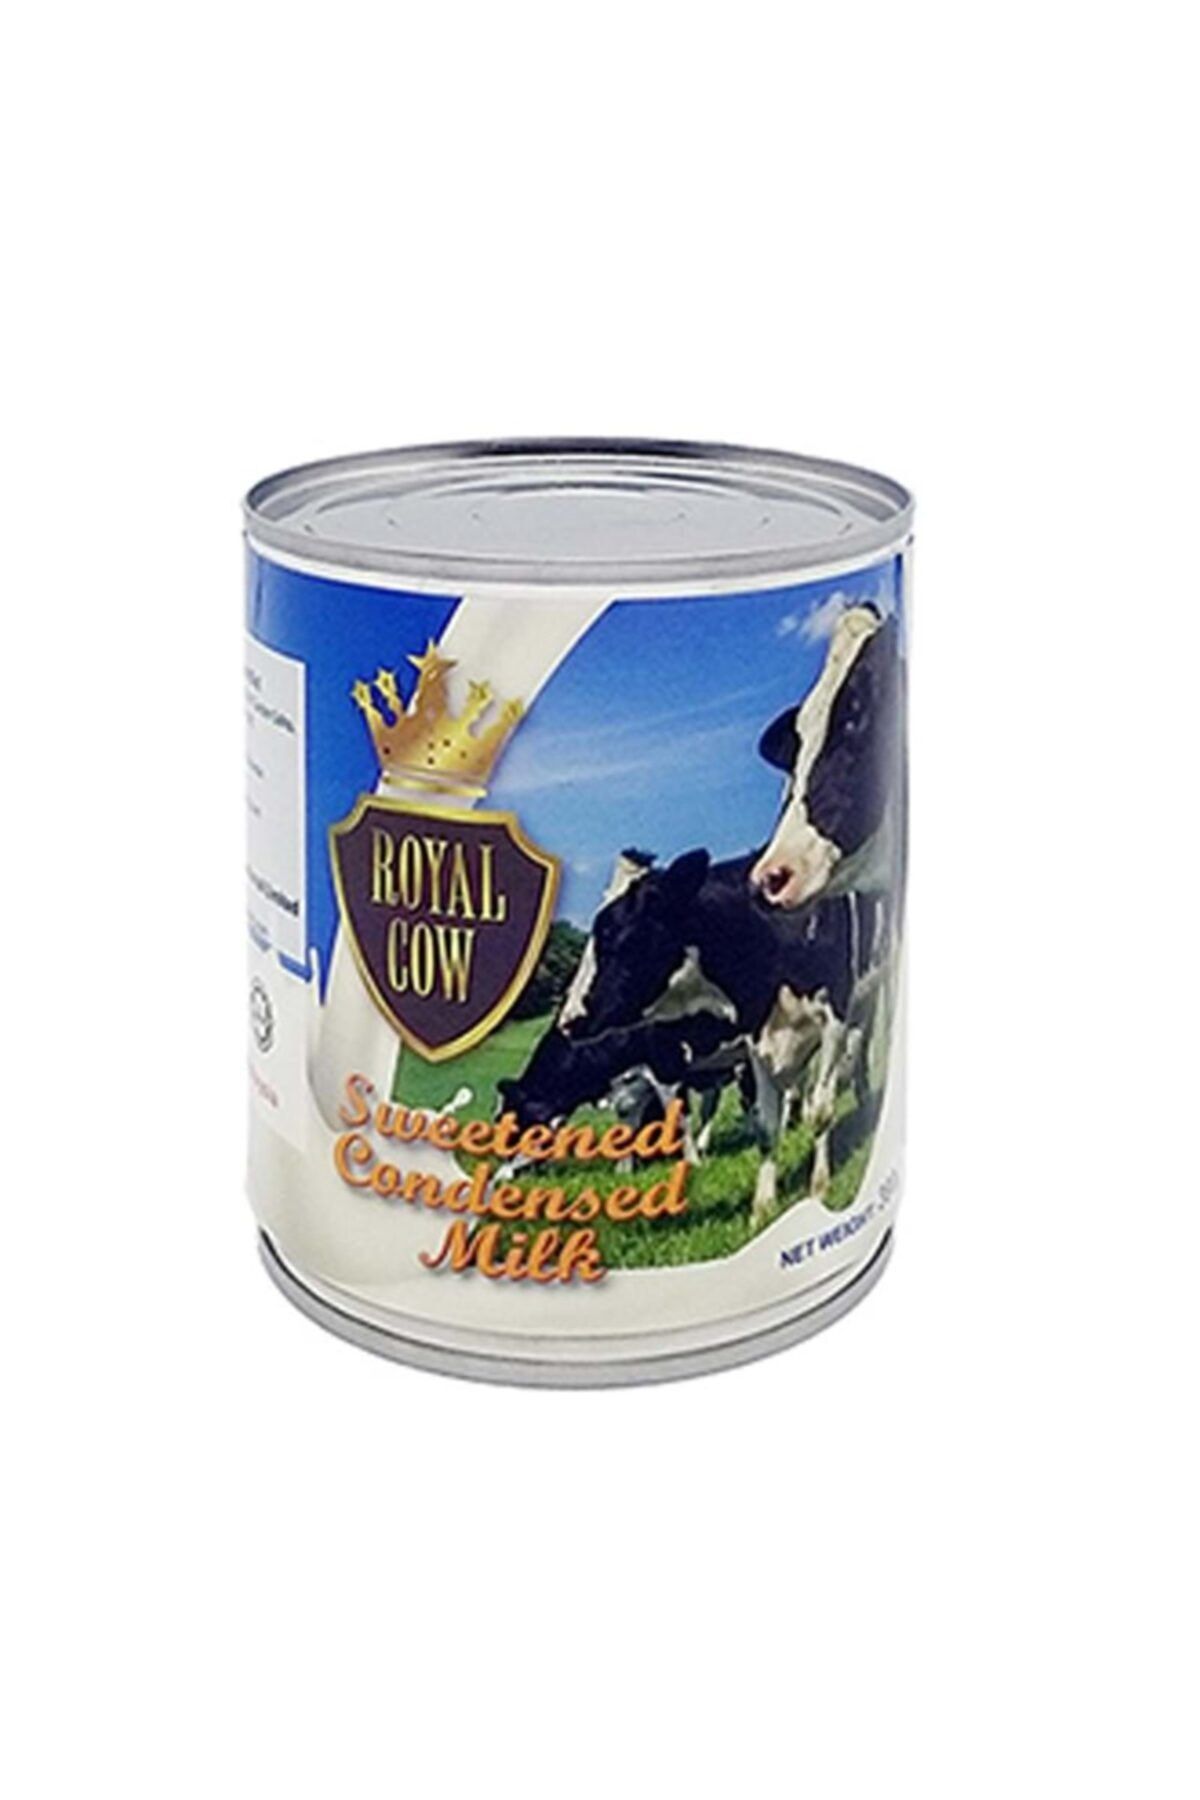 Royal Cow Sweetened Condensed Milk - Şekerli Yoğun Süt Tatlandırılmış Yoğunlaştırılmış Süt 390 gr